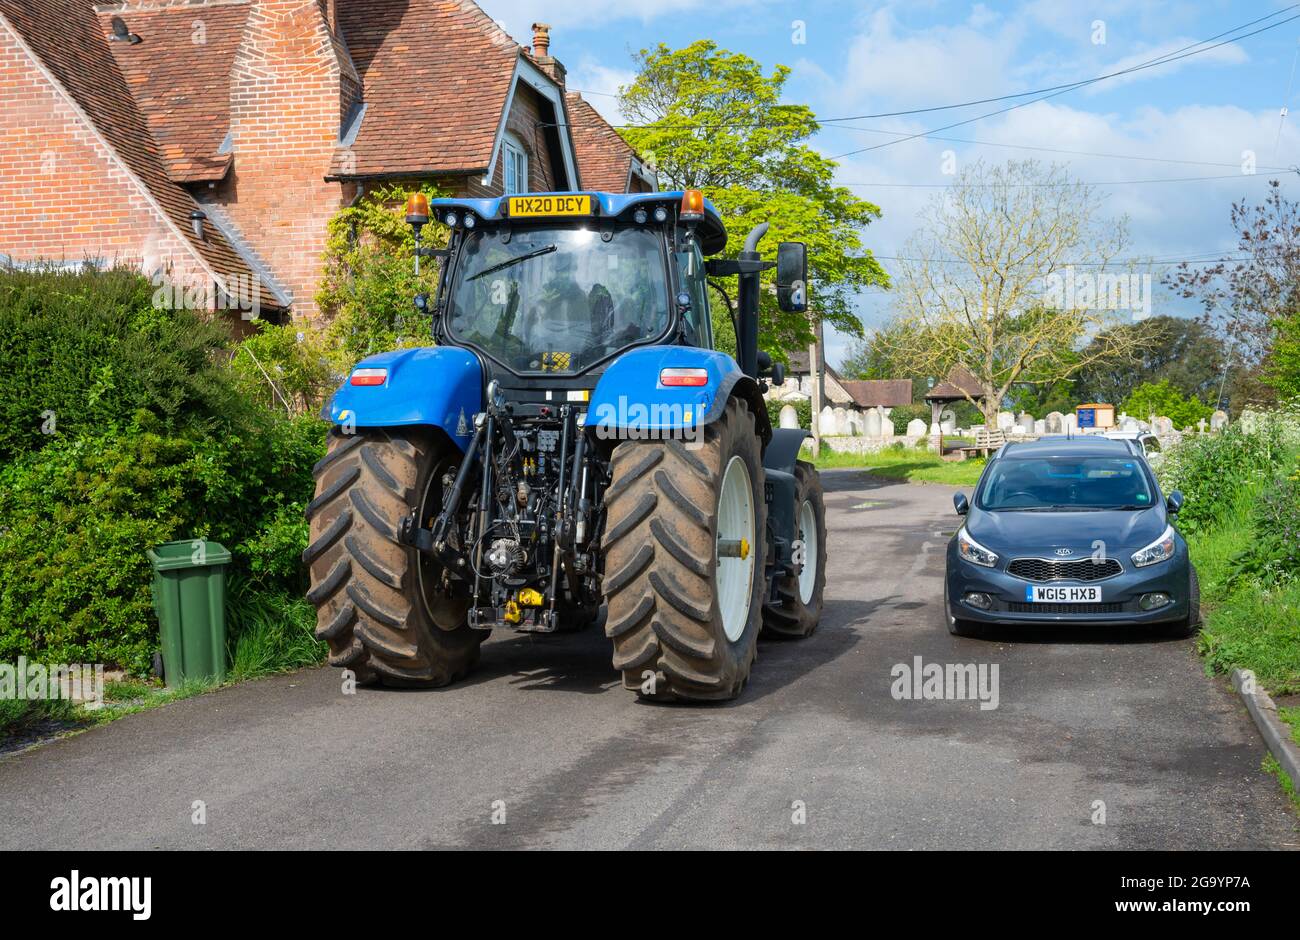 Rückansicht eines großen landwirtschaftlichen Traktors mit großen Hinterreifen in einer engen Wohnstraße in England, Großbritannien. Stockfoto